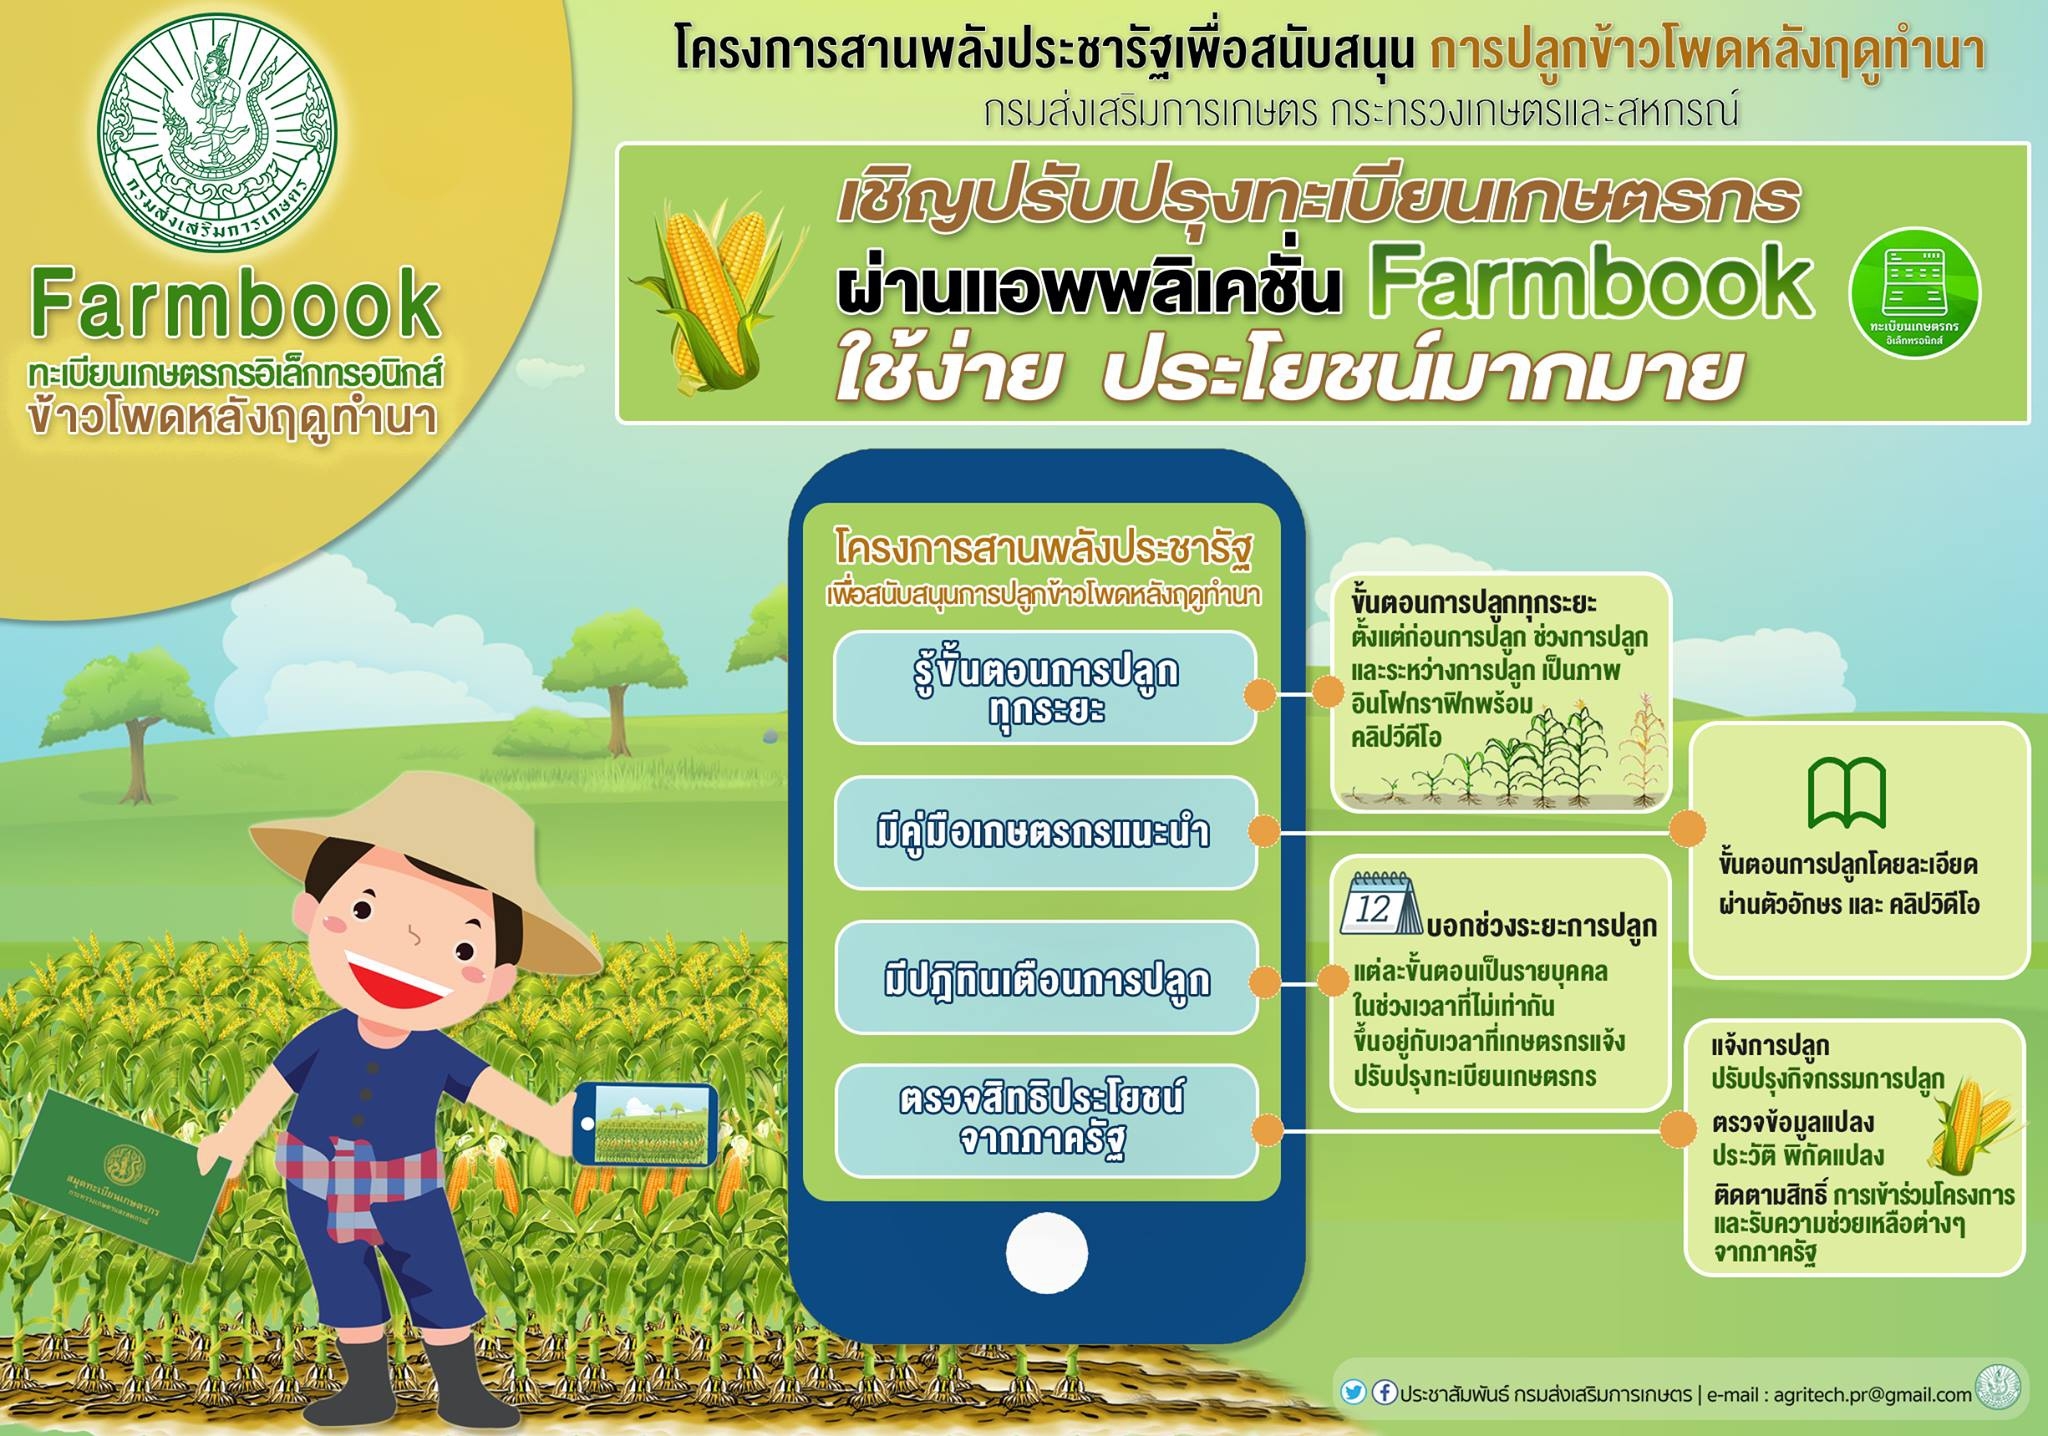 มาปร บปร งทะเบ ยนเกษตรกร ด วยแอฟ Farmbook เกษตรก าวไกล